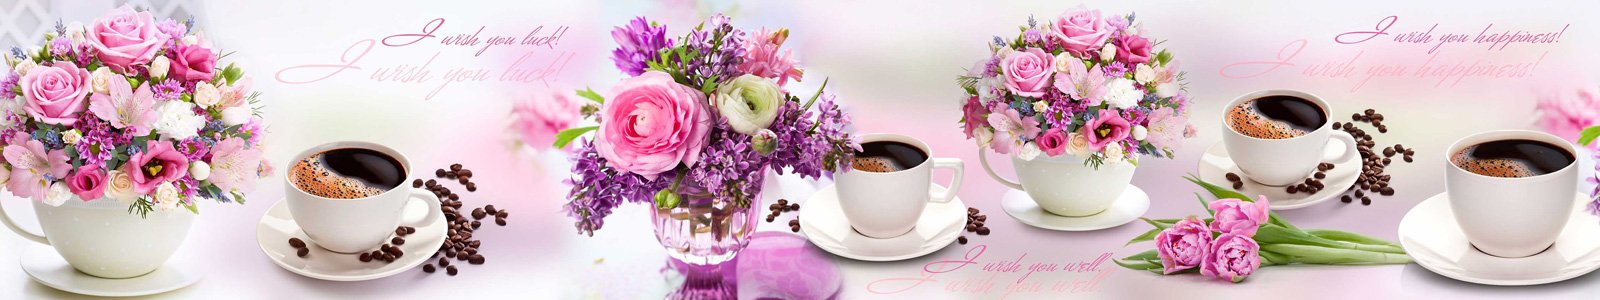 №7231 - Нежные цветы и ароматный кофе на столе